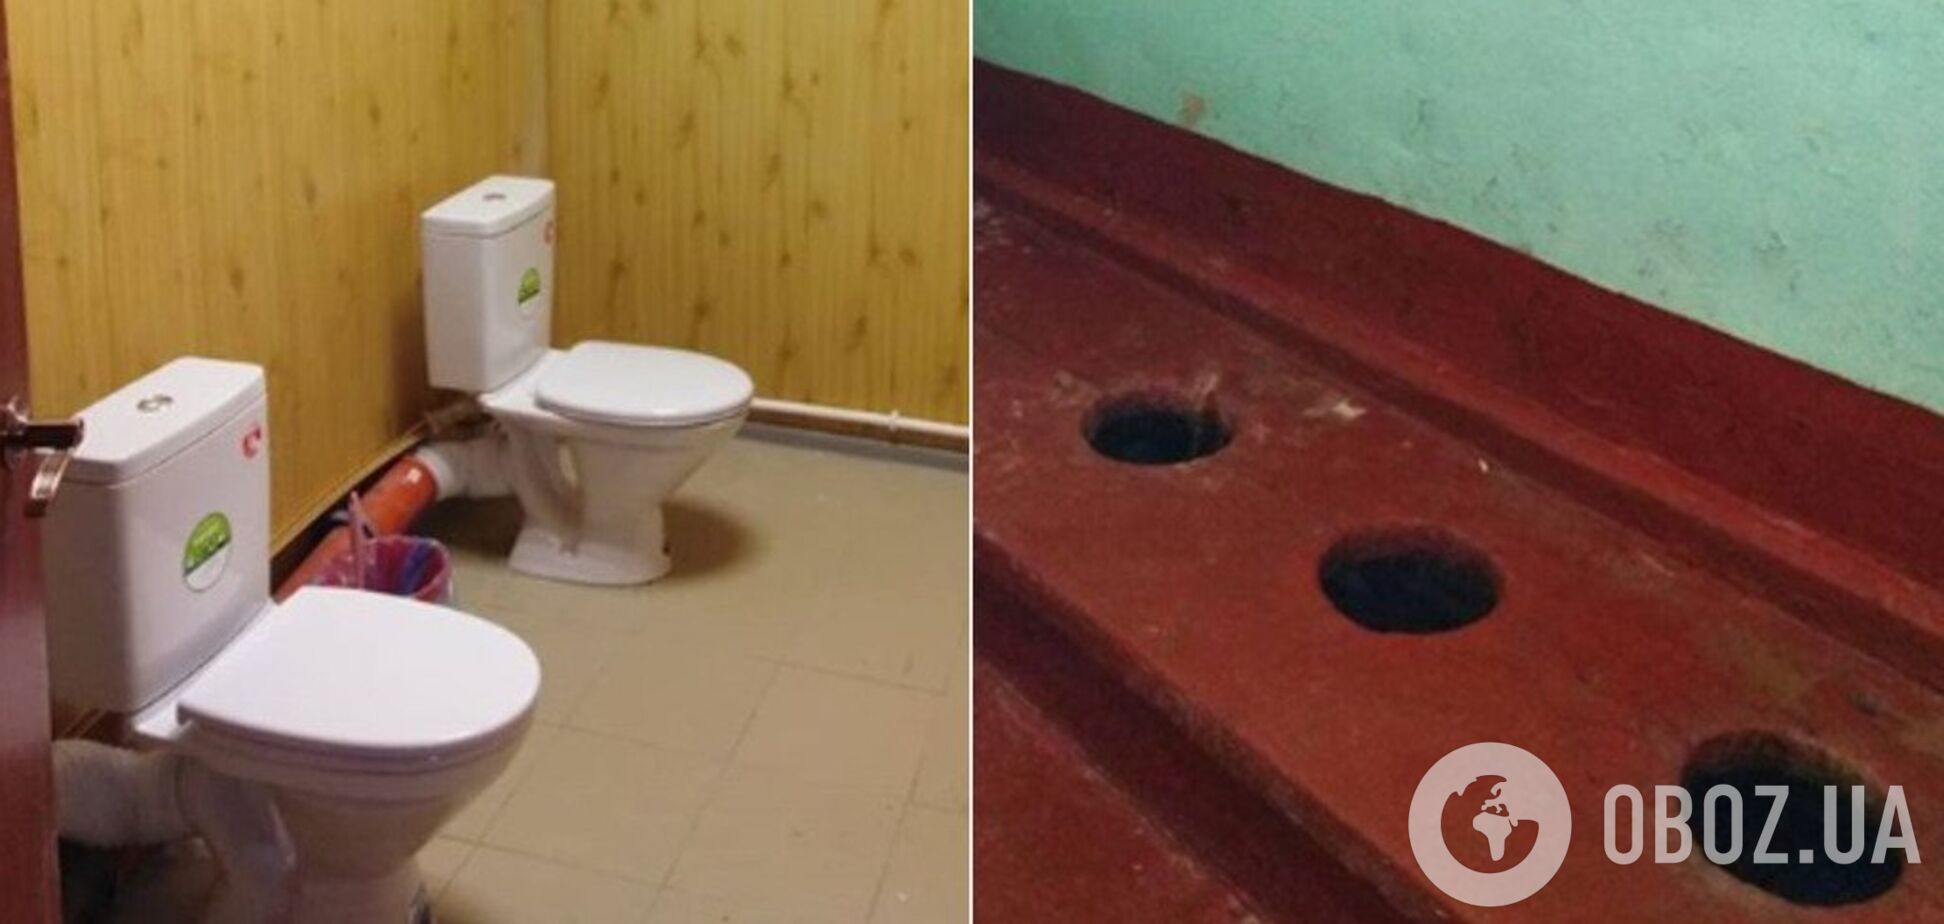 Вместо дыр – унитазы без кабинок! Российский мэр подорвал сеть изменениями в одной из школ